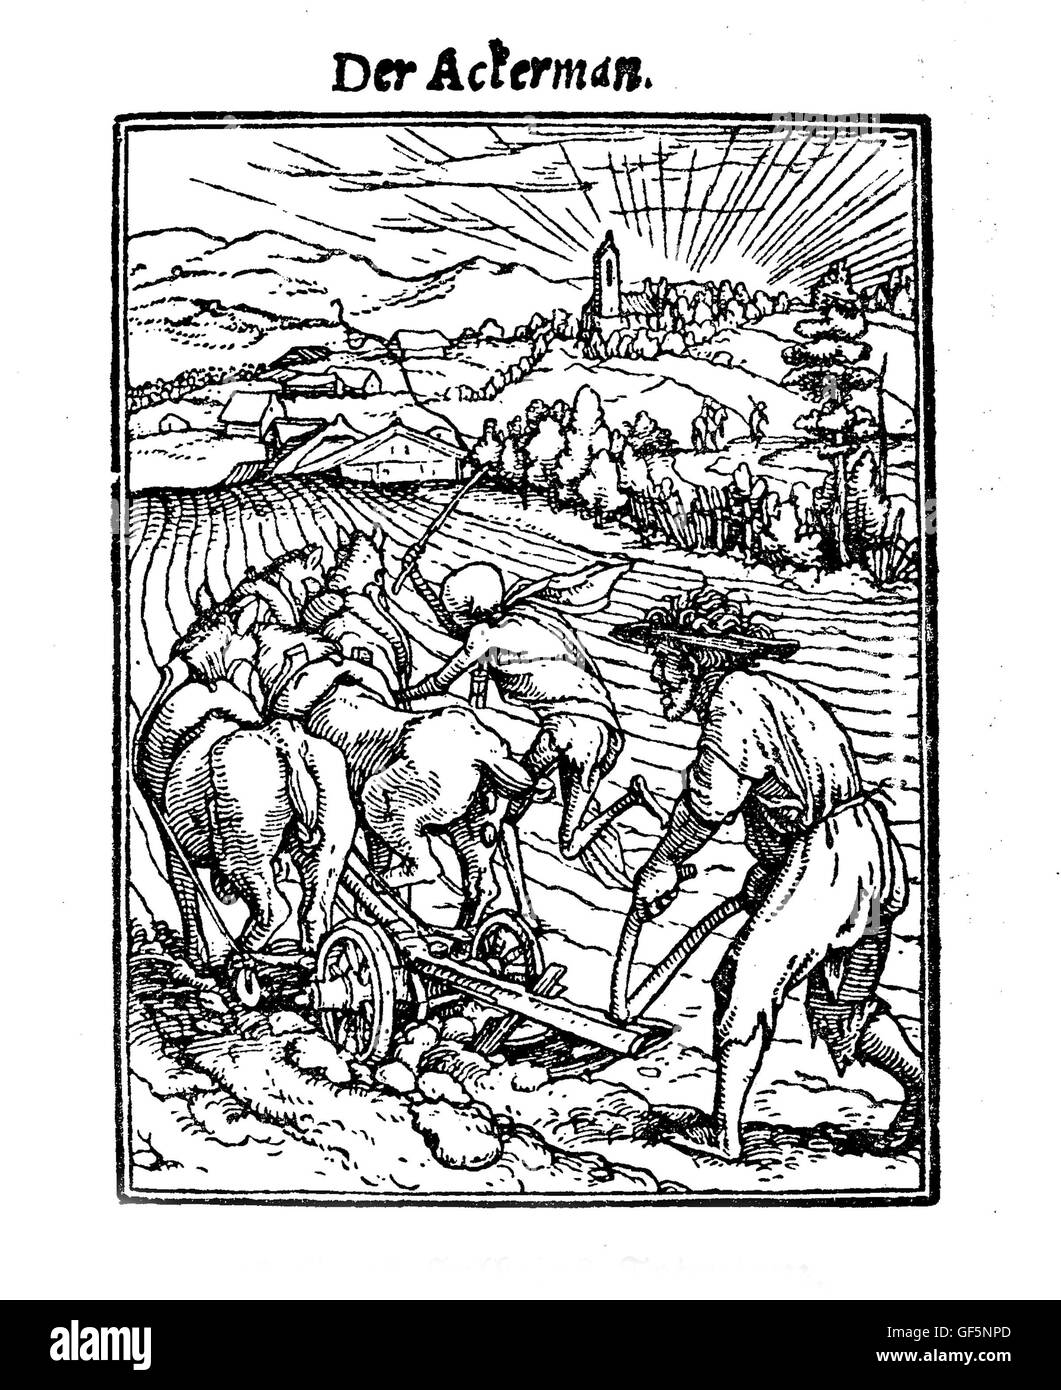 XV siècle, la mort comme l'plower, illustration inspirée de Hans Holbein's 'Totentanz' ('La danse macabre", un recueil de 40 gravures sur bois) : une scène bucolique trompeusement lésée par une mort-comme la figure fouetter les chevaux. Banque D'Images